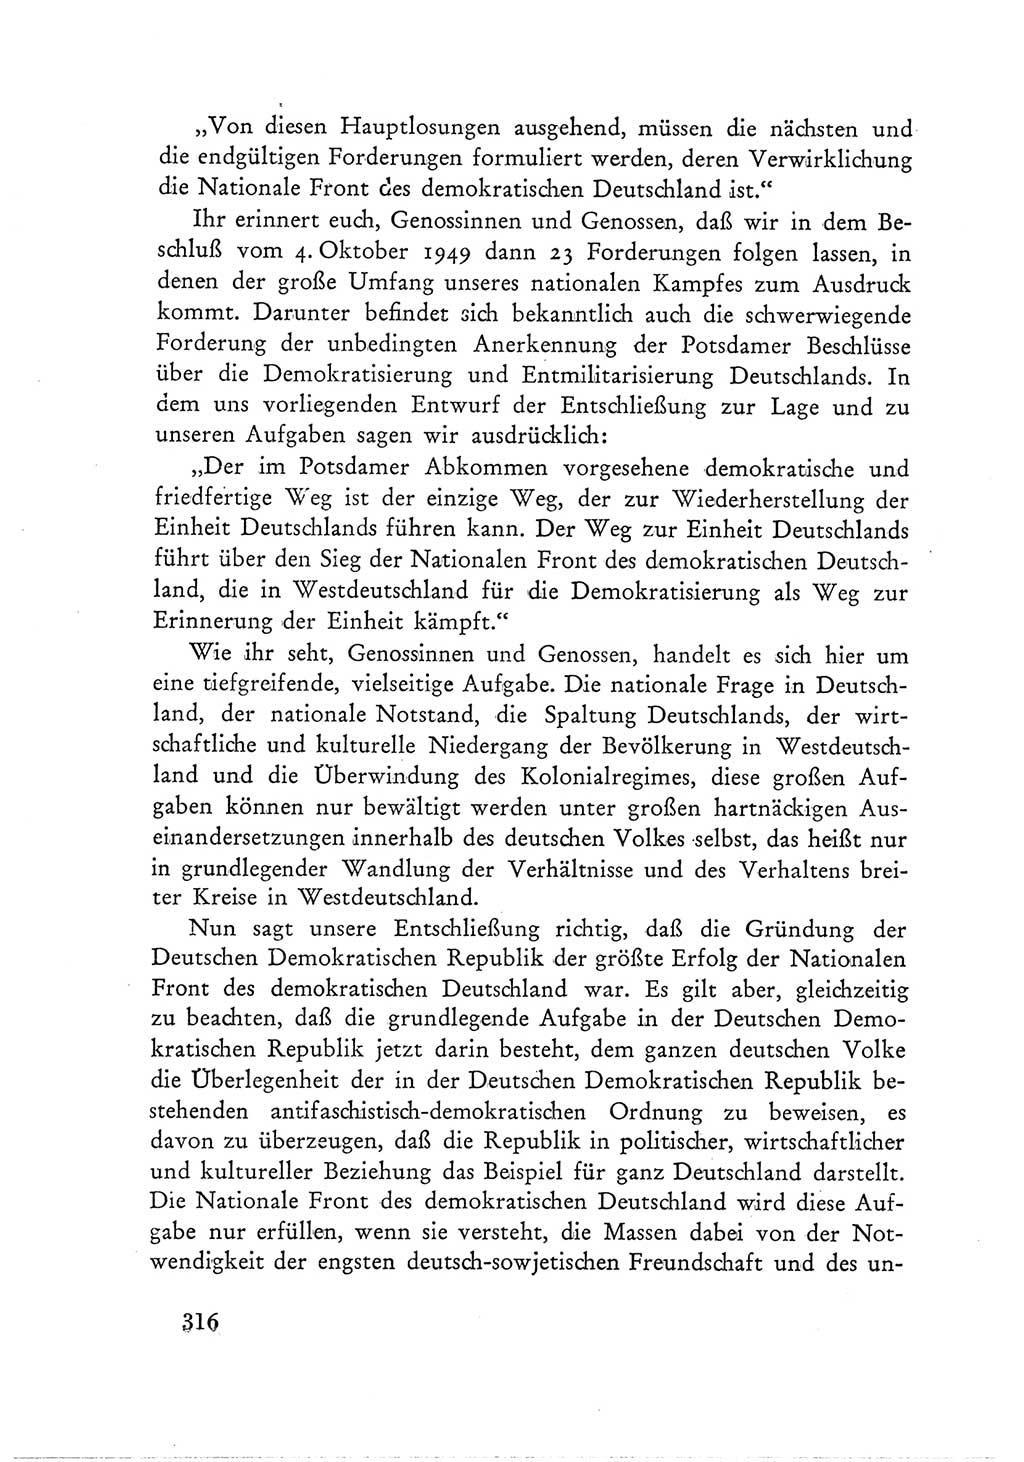 Protokoll der Verhandlungen des Ⅲ. Parteitages der Sozialistischen Einheitspartei Deutschlands (SED) [Deutsche Demokratische Republik (DDR)] 1950, Band 1, Seite 316 (Prot. Verh. Ⅲ. PT SED DDR 1950, Bd. 1, S. 316)